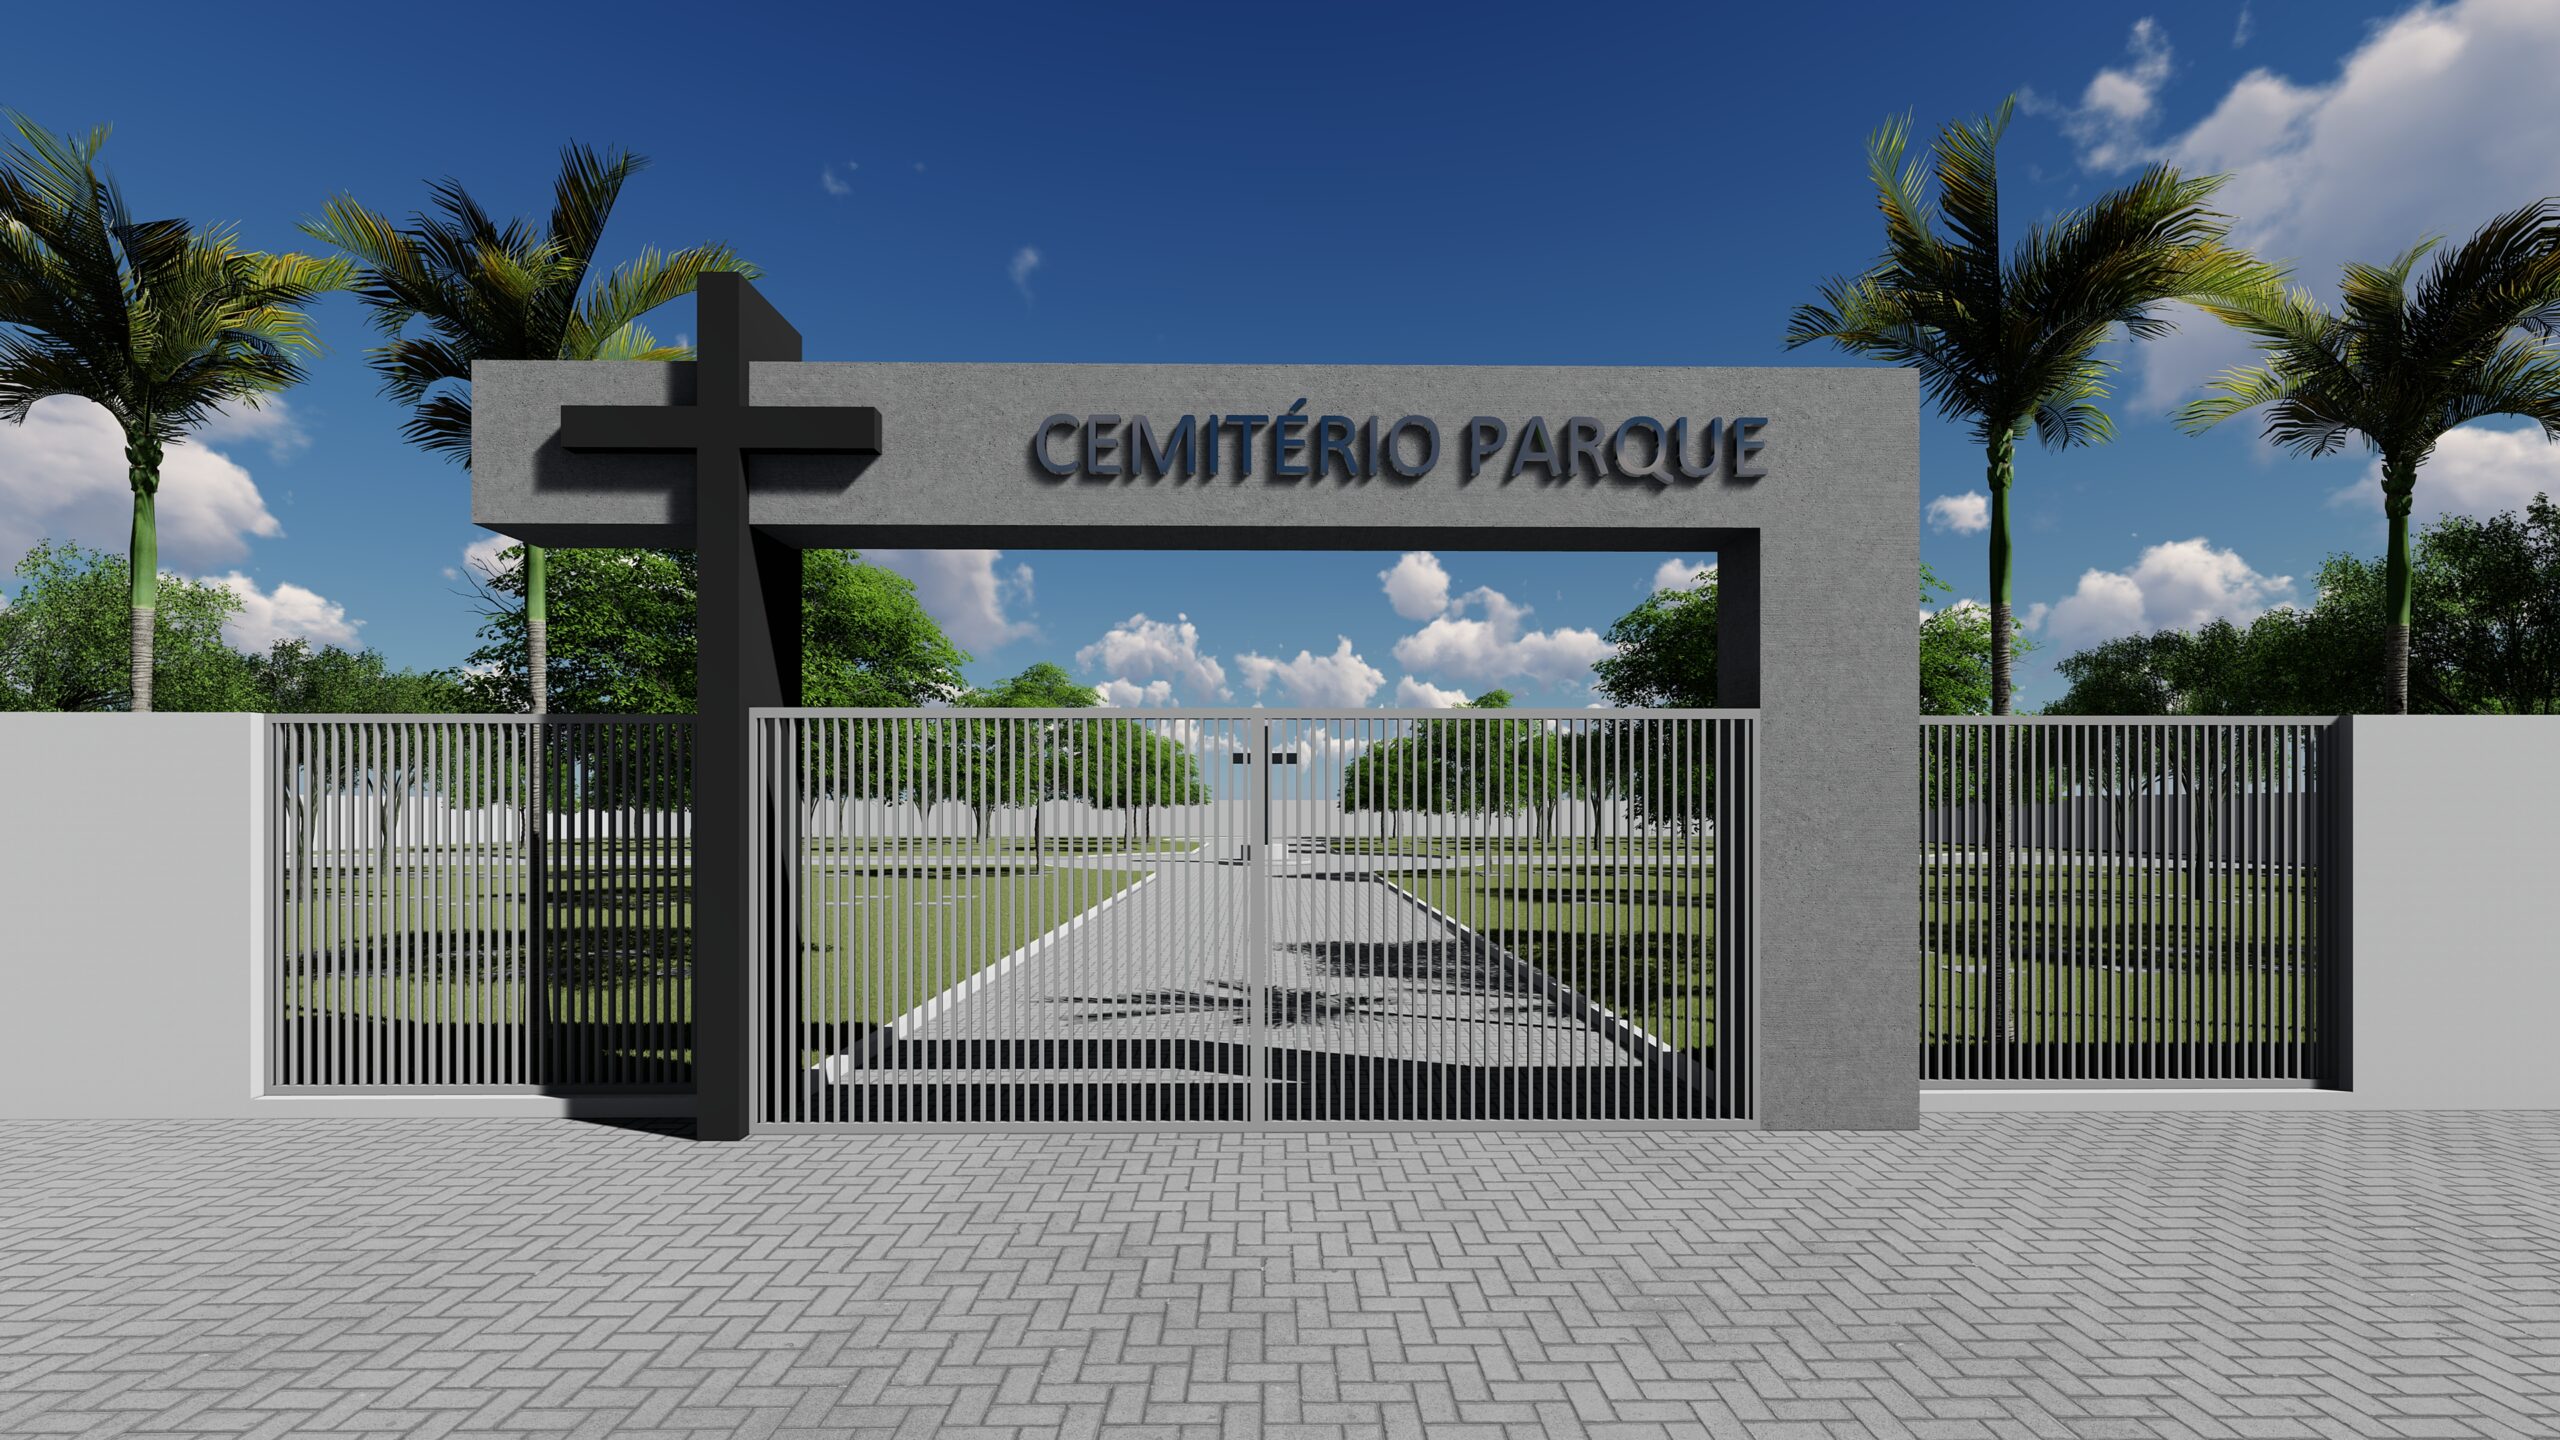 CEMITÉRIO PARQUE - PRADO FERREIRA